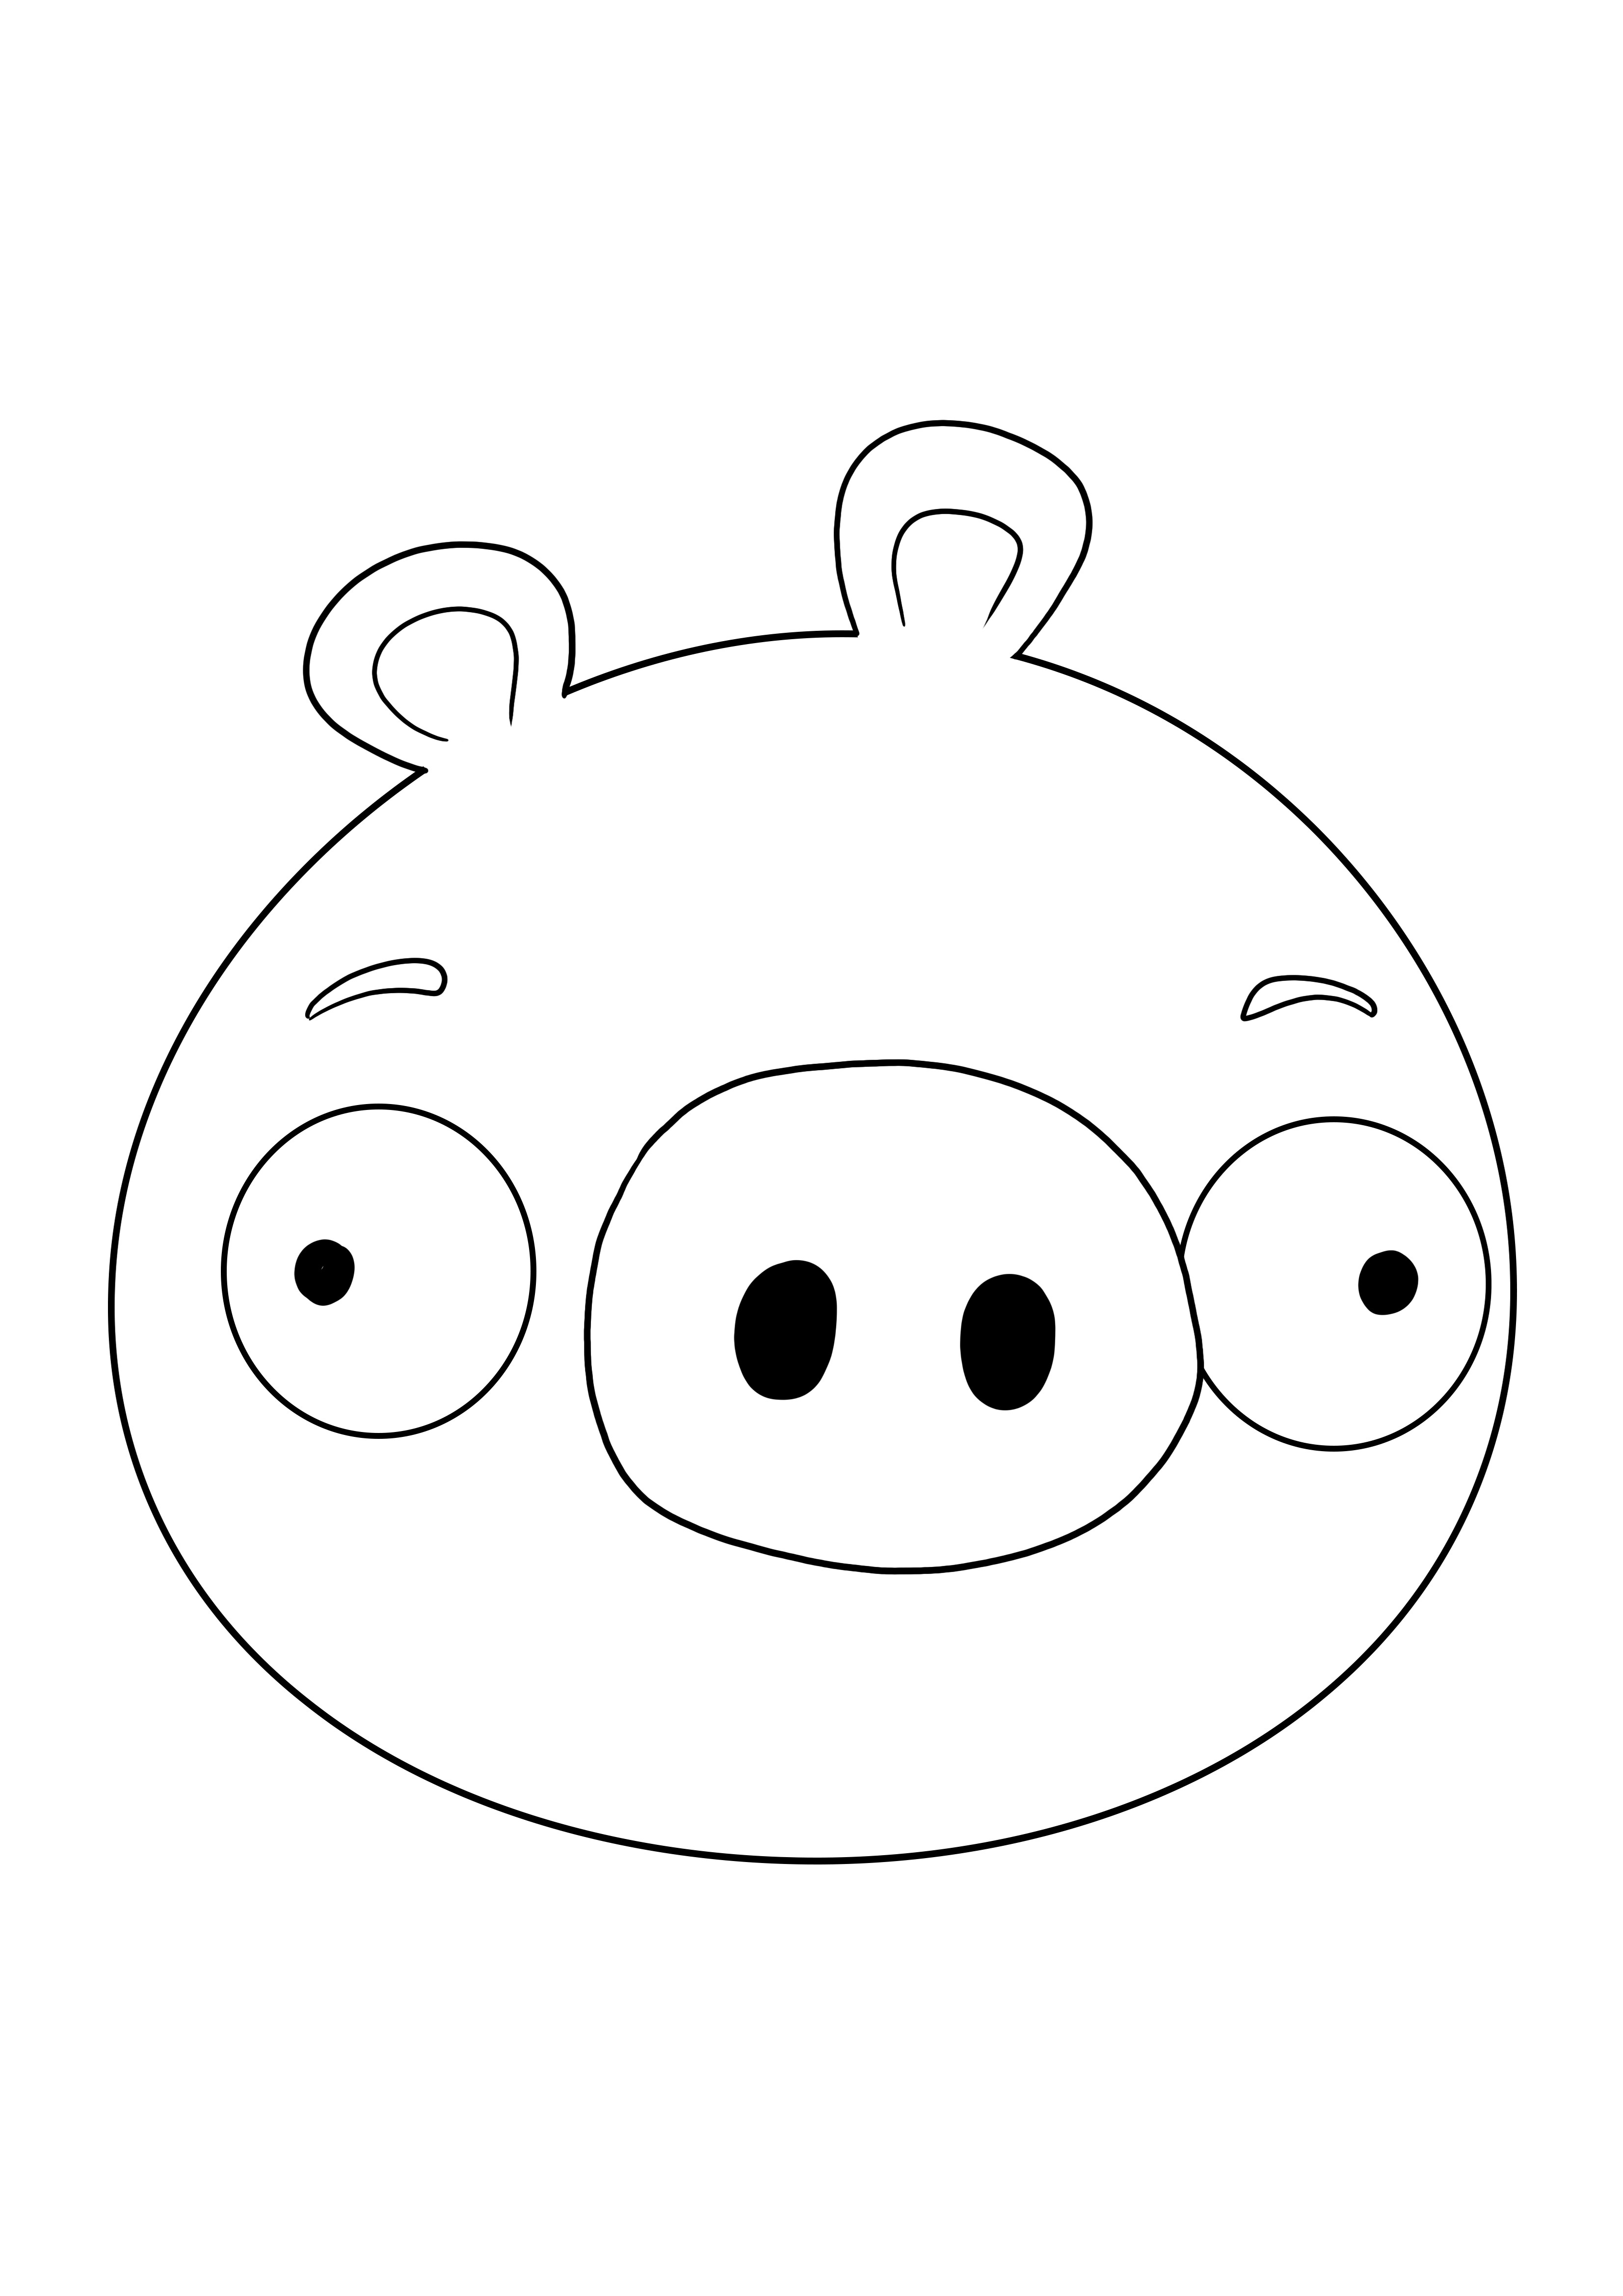 O rosto dos minion pigs está pronto para ser impresso e colorido gratuitamente